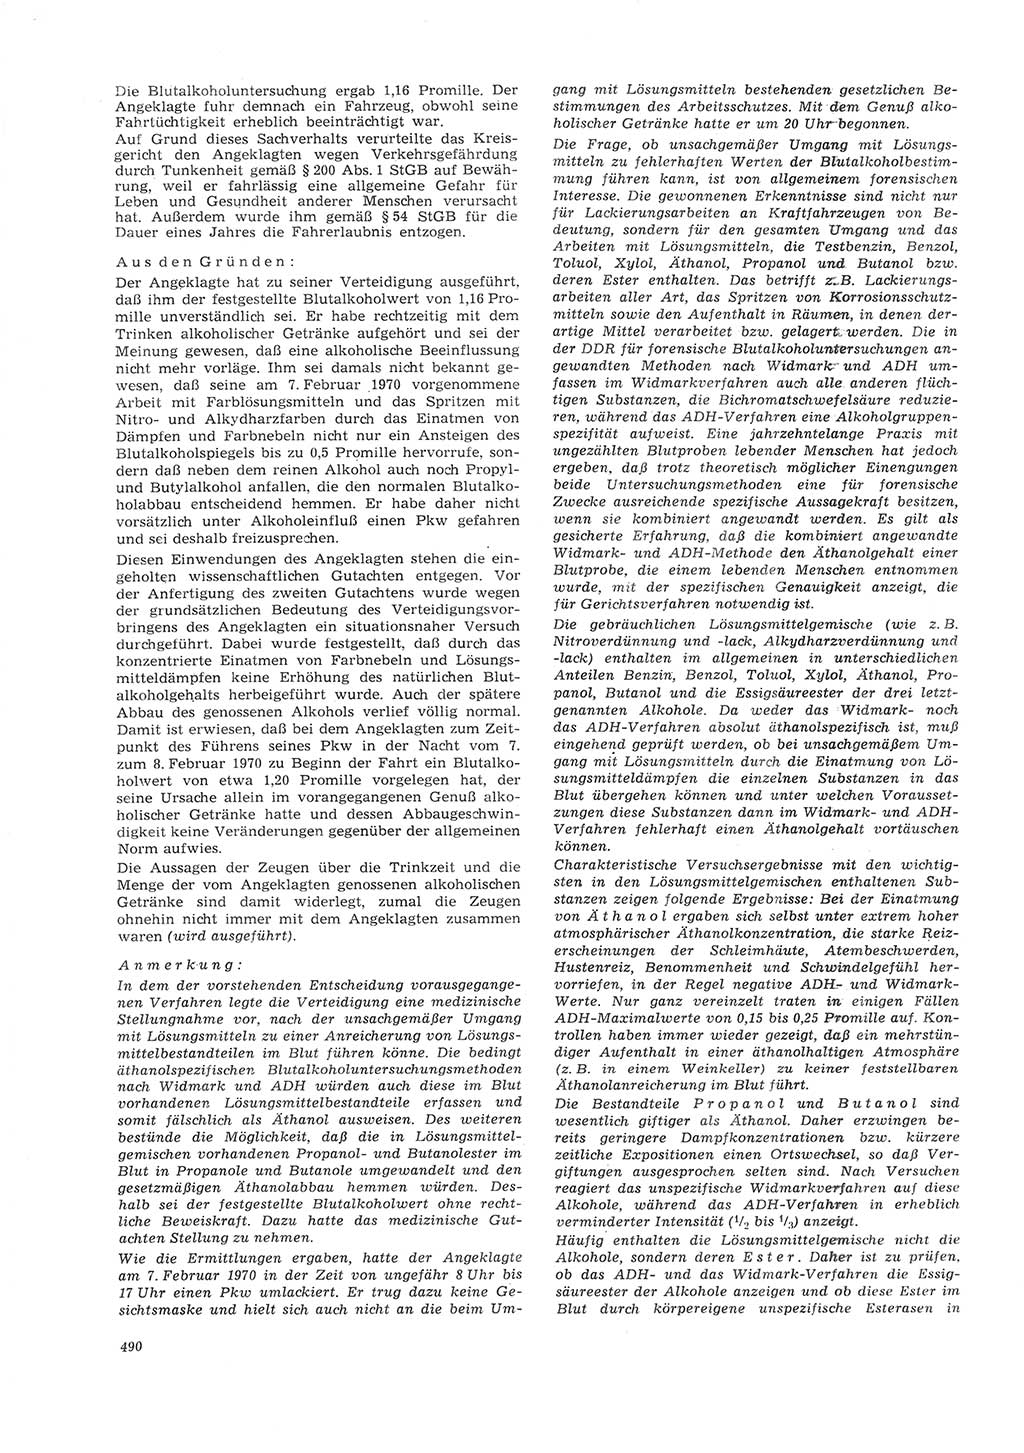 Neue Justiz (NJ), Zeitschrift für Recht und Rechtswissenschaft [Deutsche Demokratische Republik (DDR)], 26. Jahrgang 1972, Seite 490 (NJ DDR 1972, S. 490)